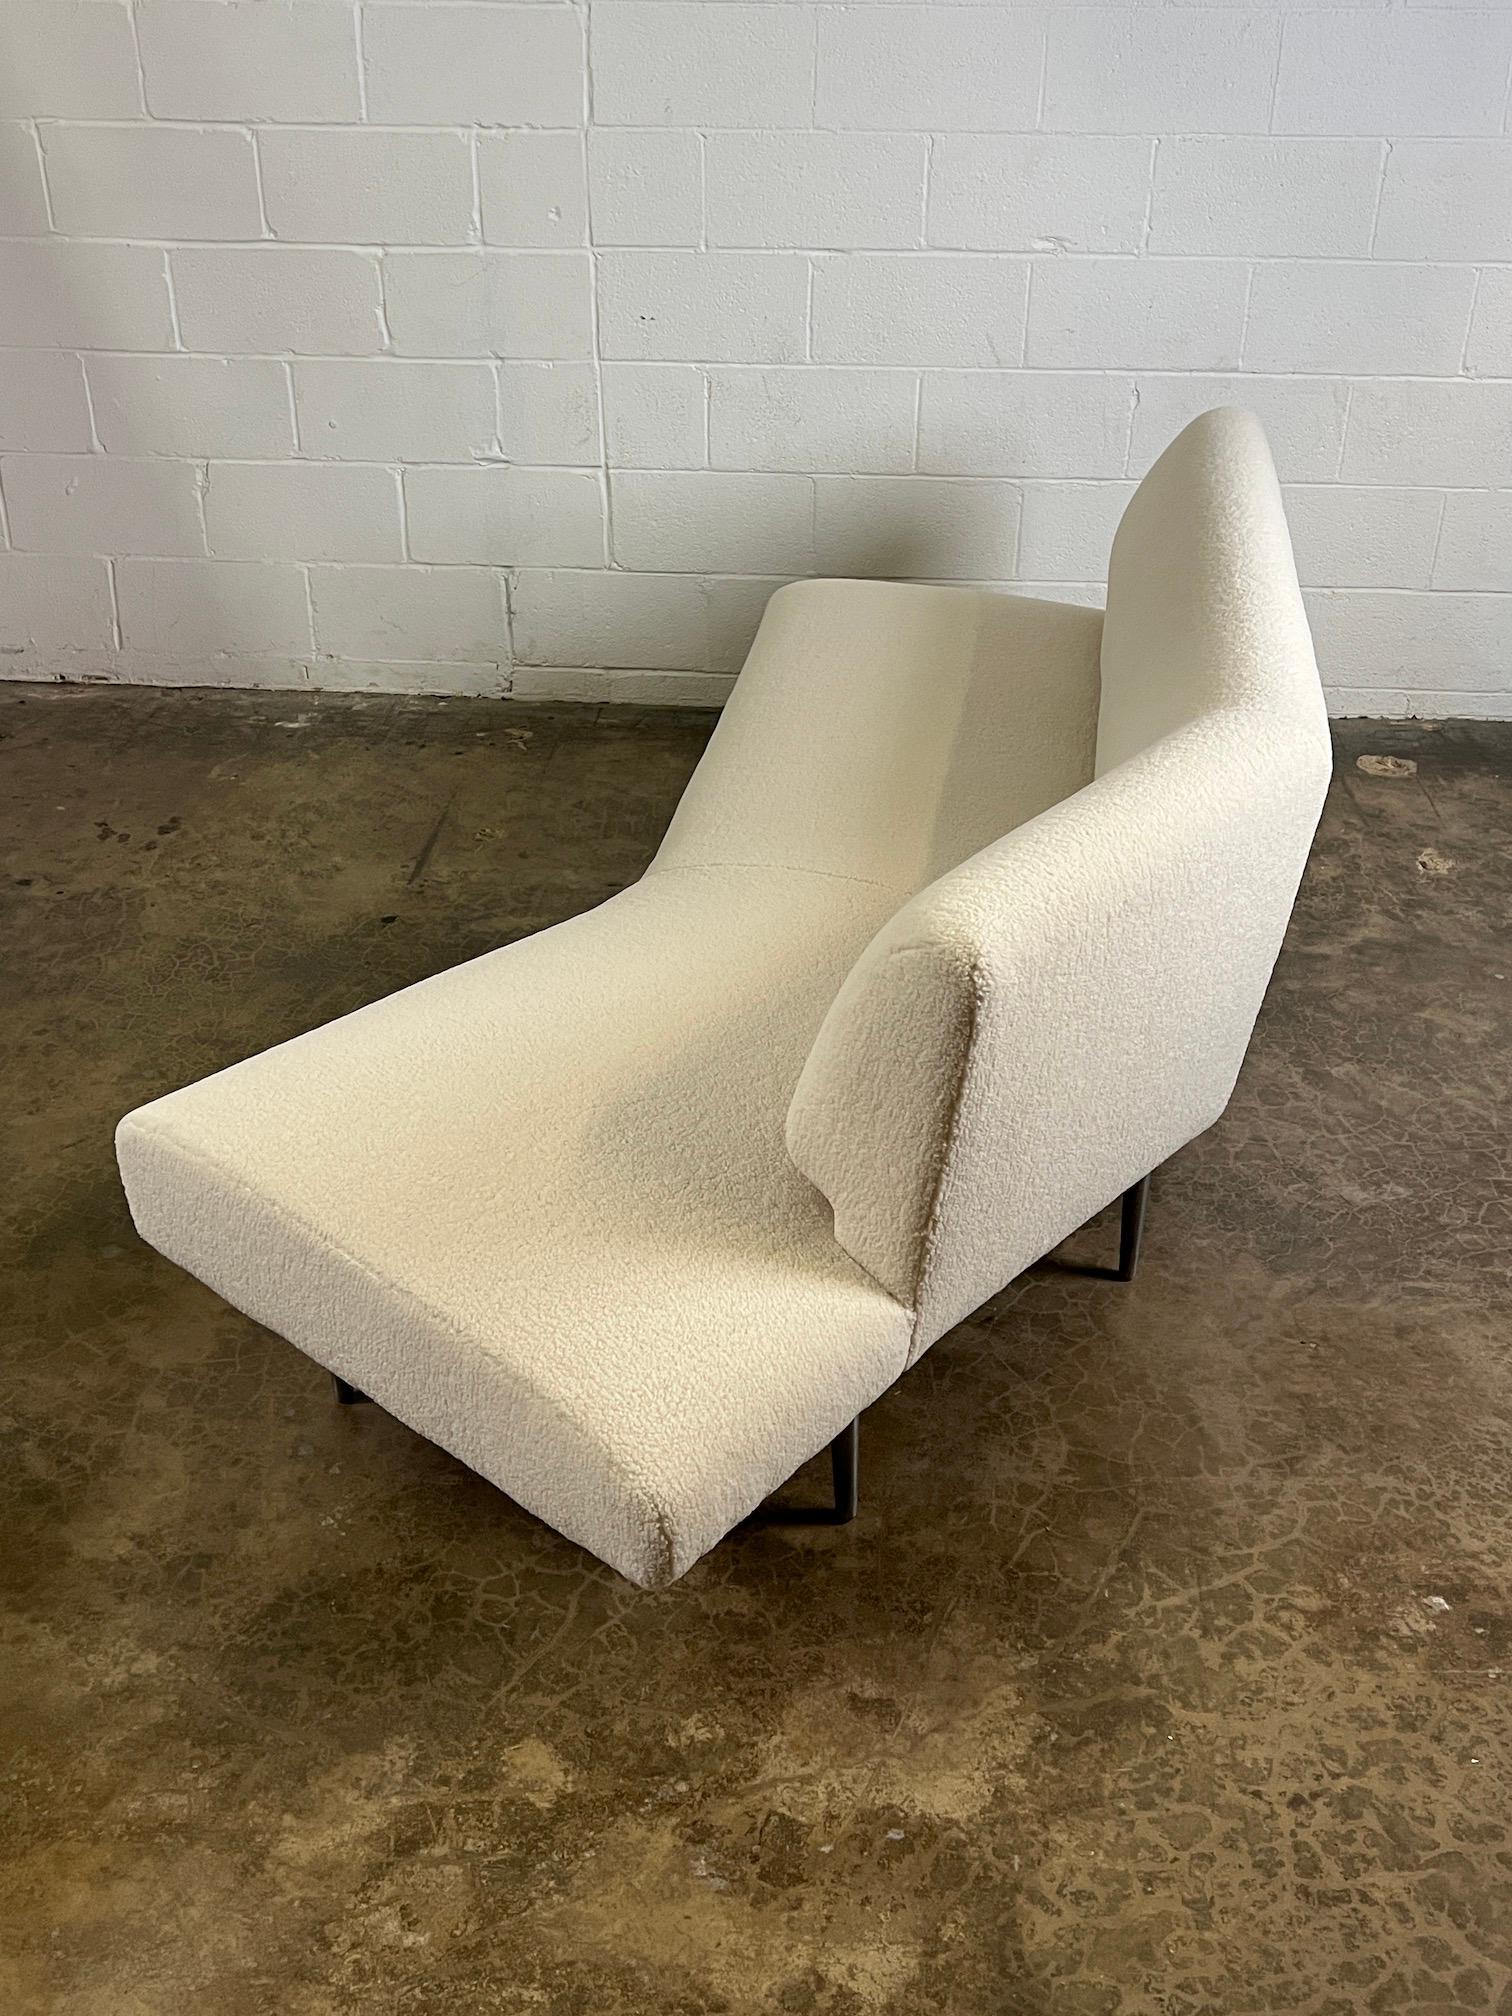 Dunbar Angle Sofa #4756 on Aluminum Legs 9